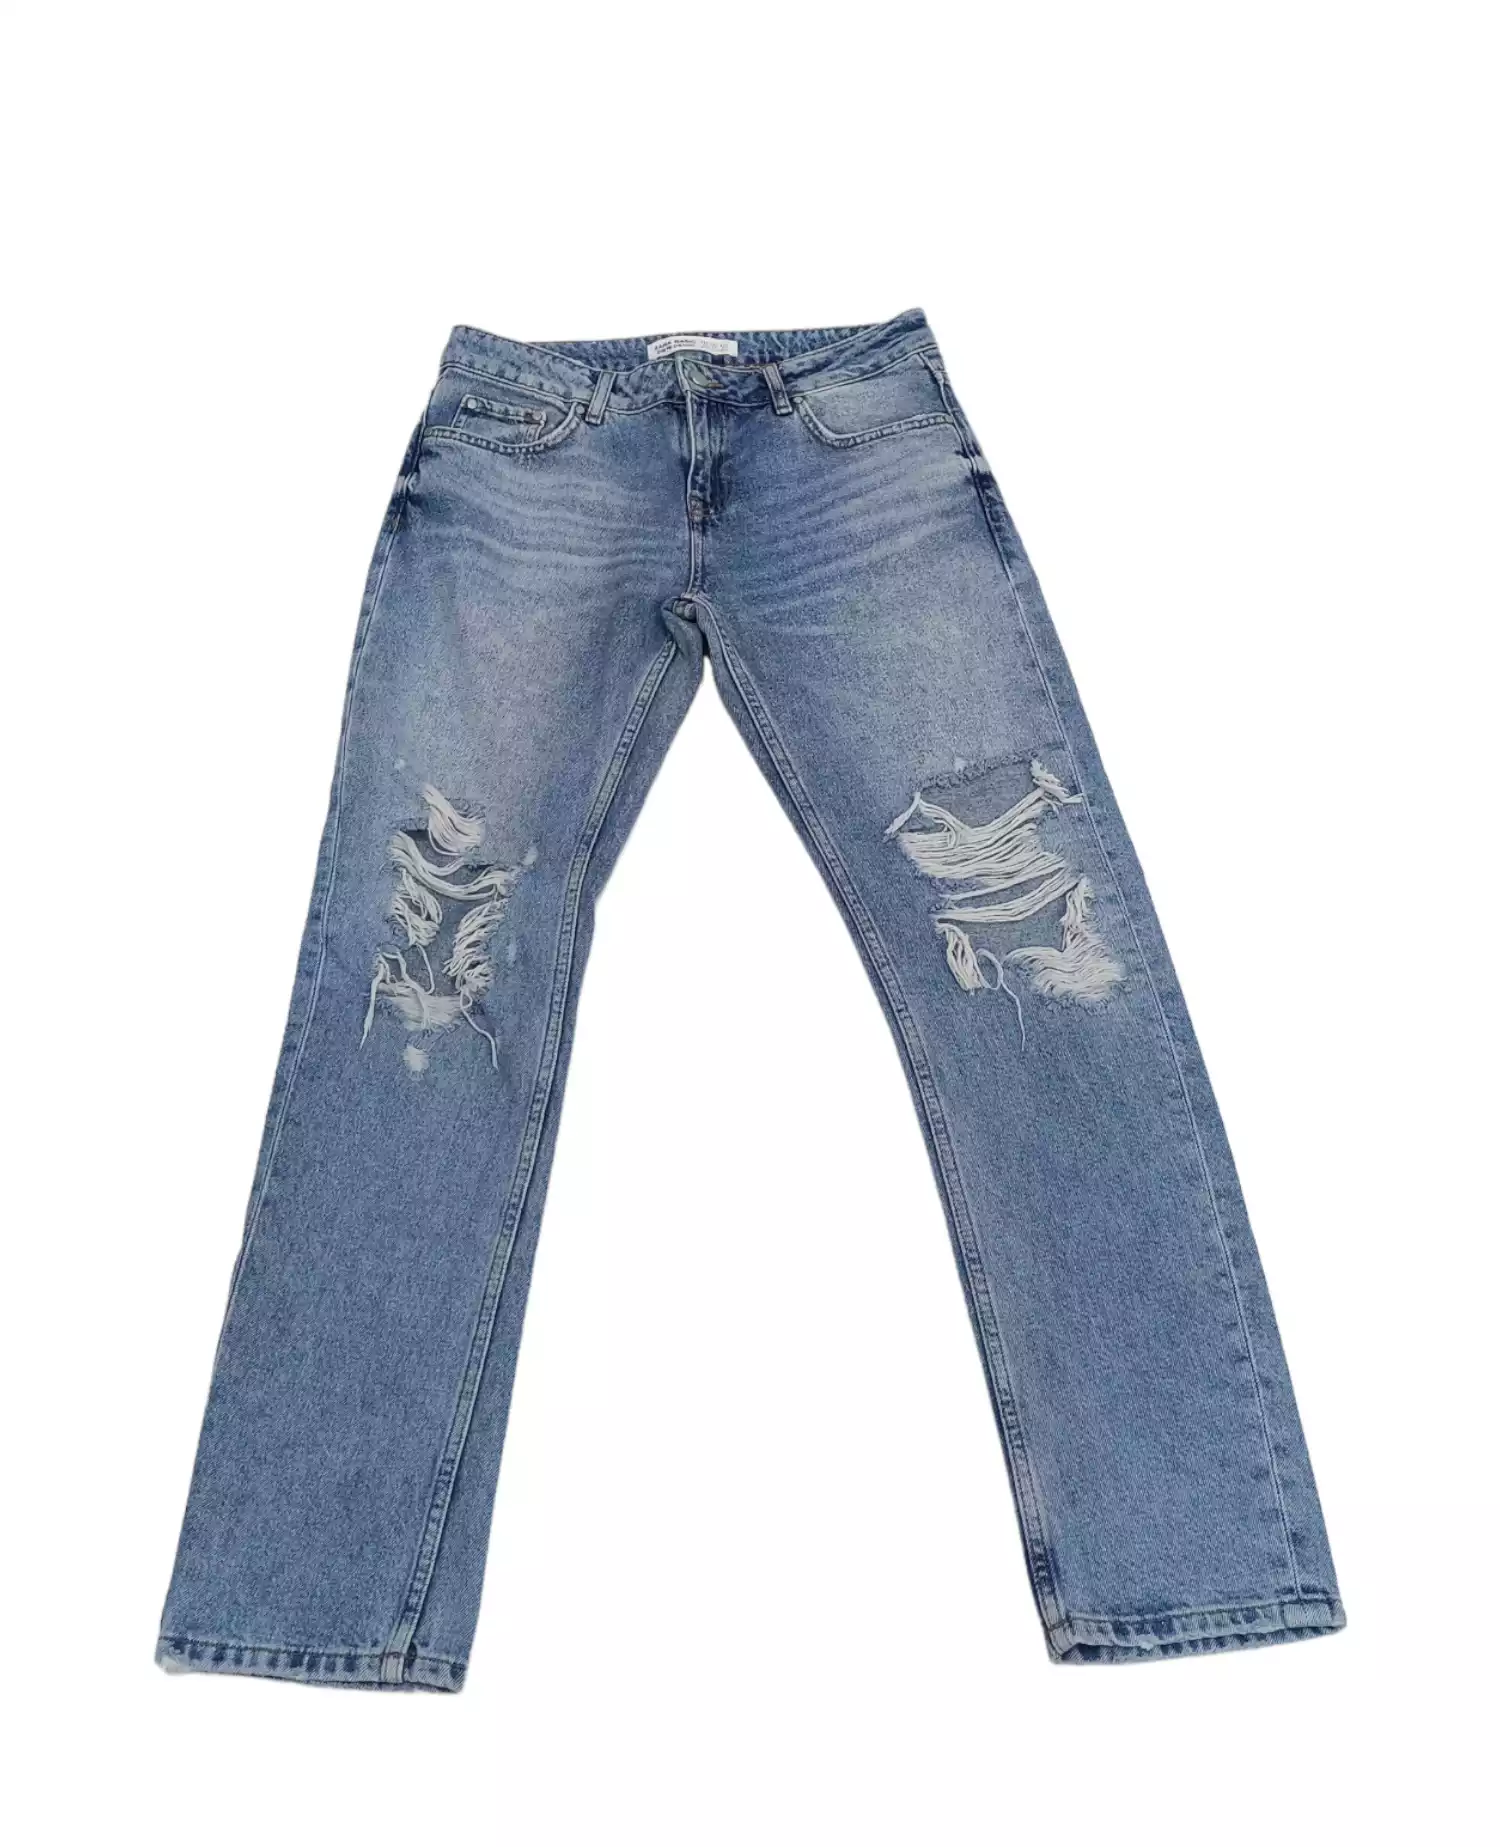 Denim Jeans by Zara